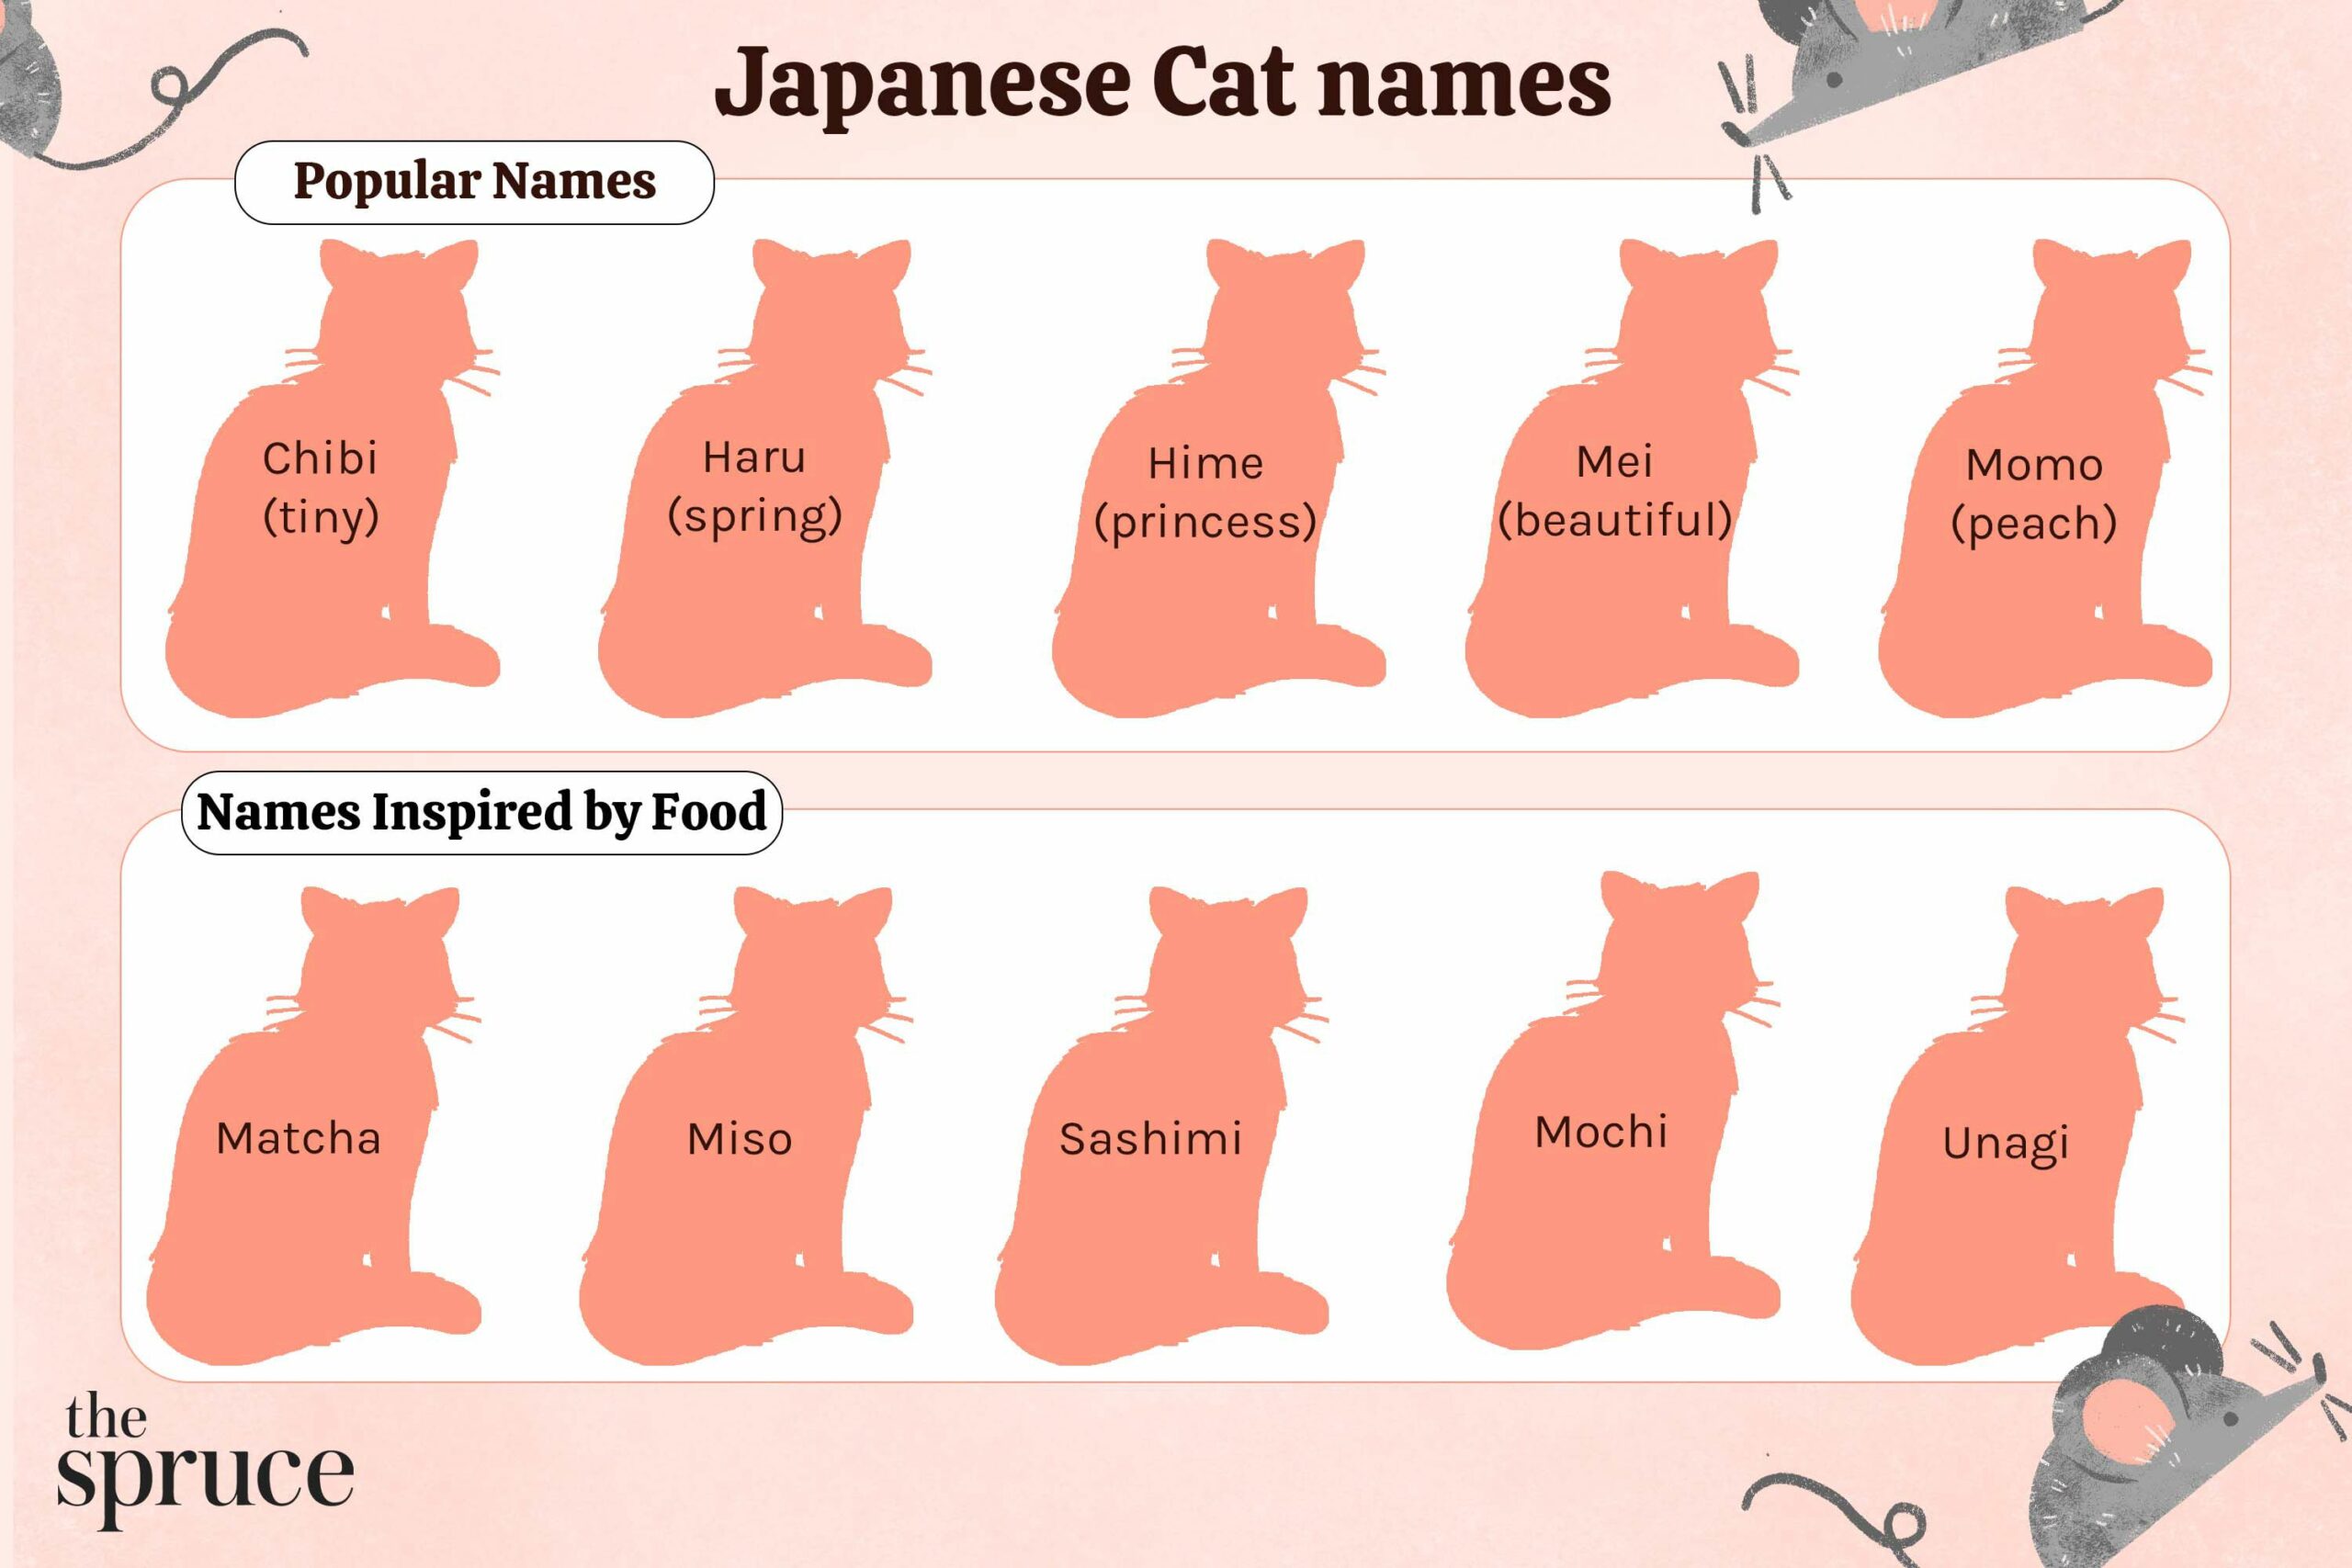 Japanese cat names 5070913 0c83f3b58a004f9bafce8405ec442bca scaled